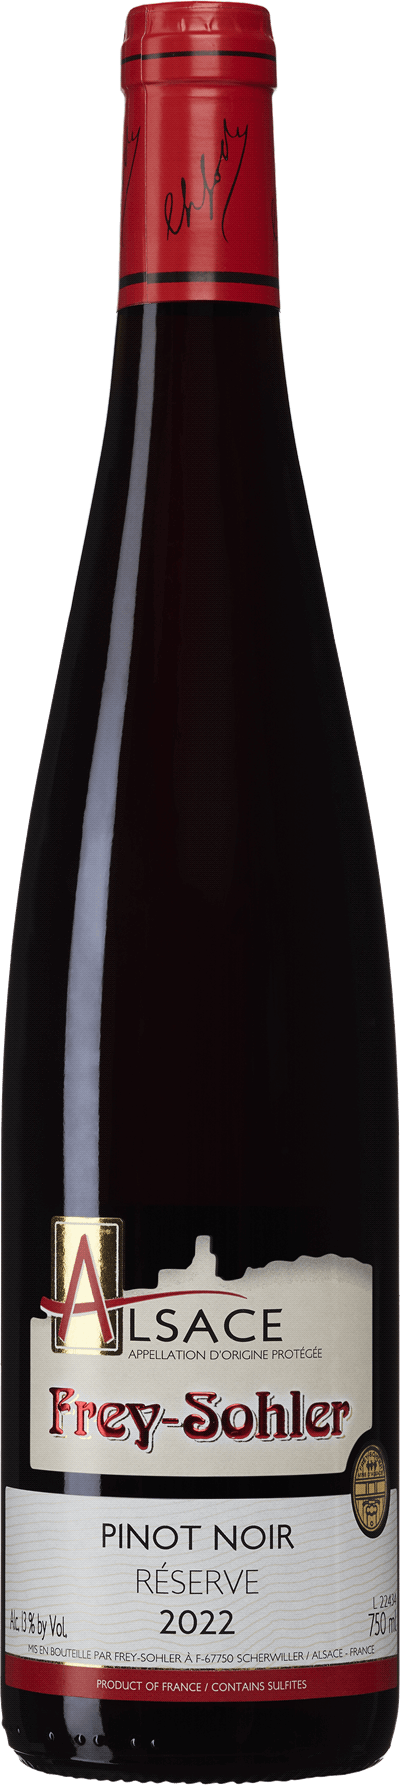 Frey-Sohler Pinot Noir Réserve, 2022